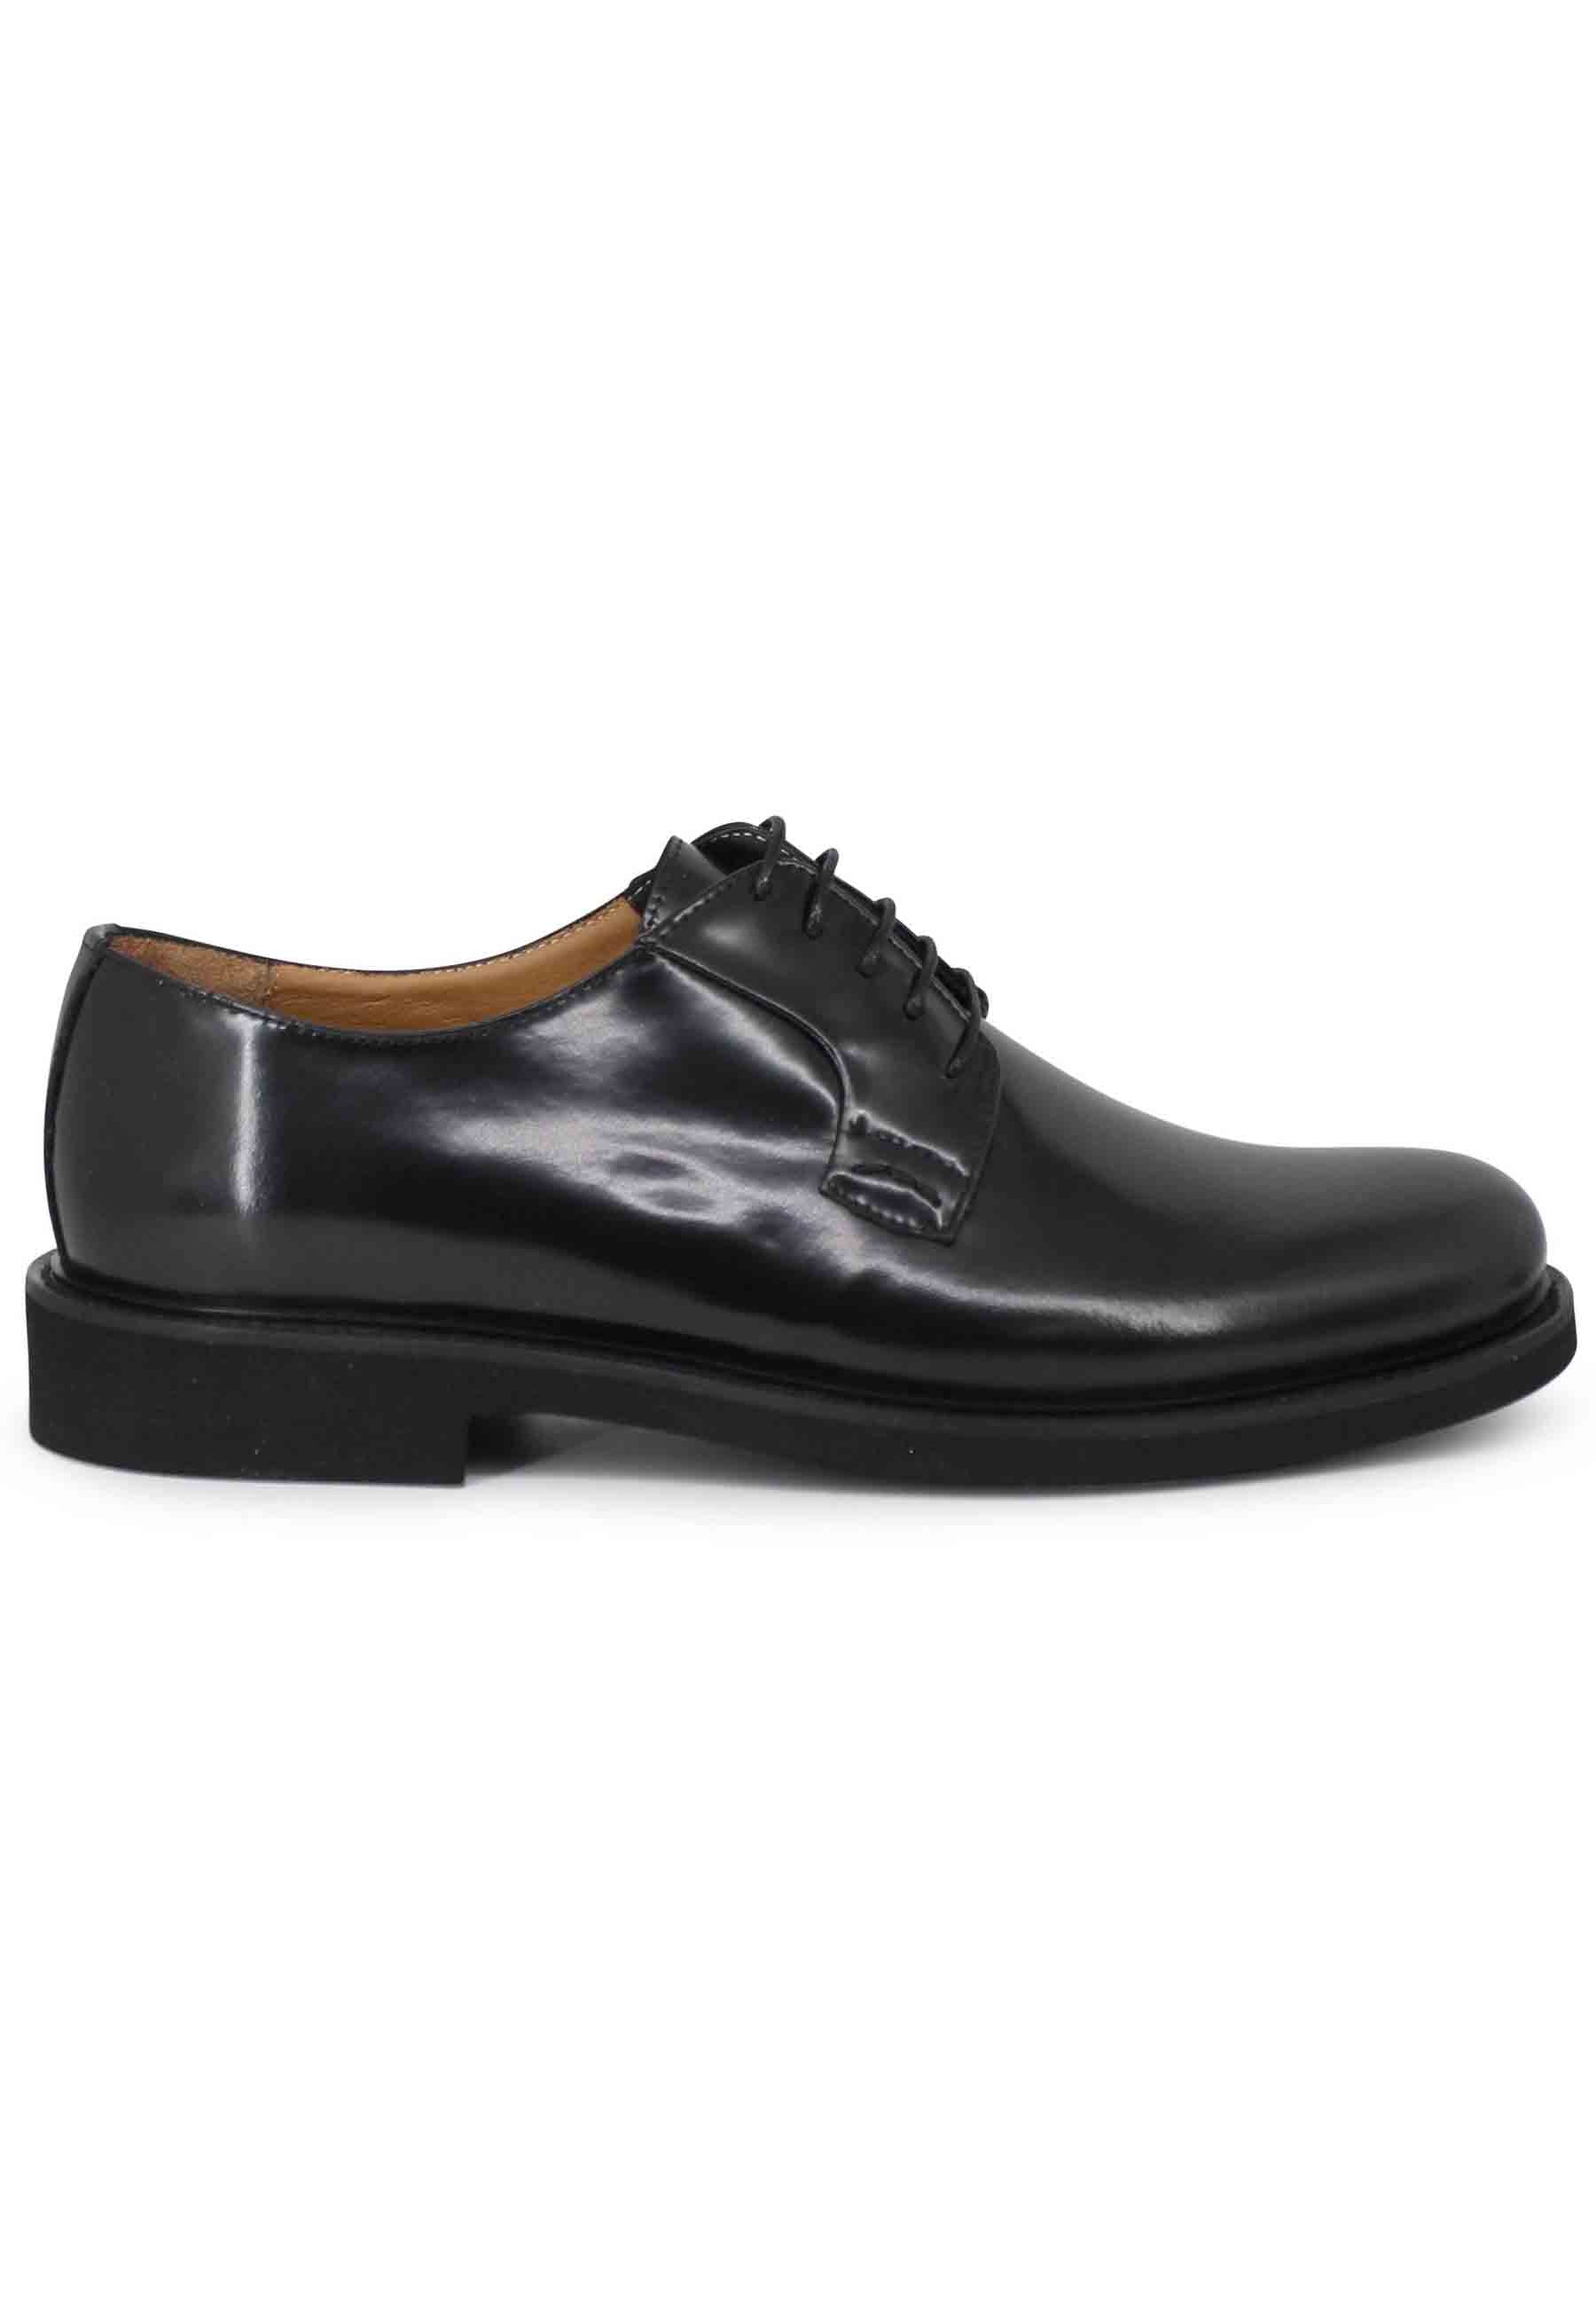 Chaussures à lacets pour hommes en cuir noir avec semelle en caoutchouc ultra légère